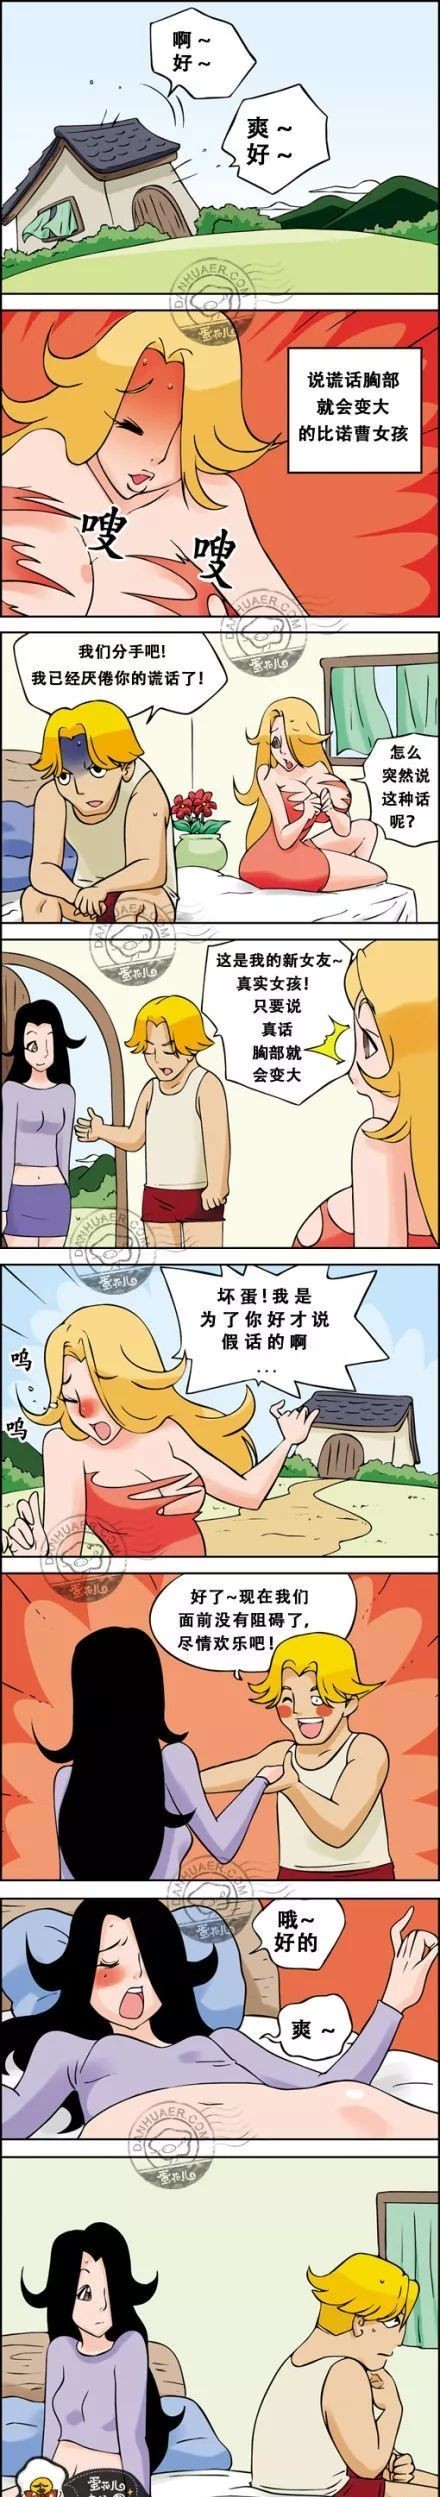 【内涵漫画】:说谎就会胸变大哟!